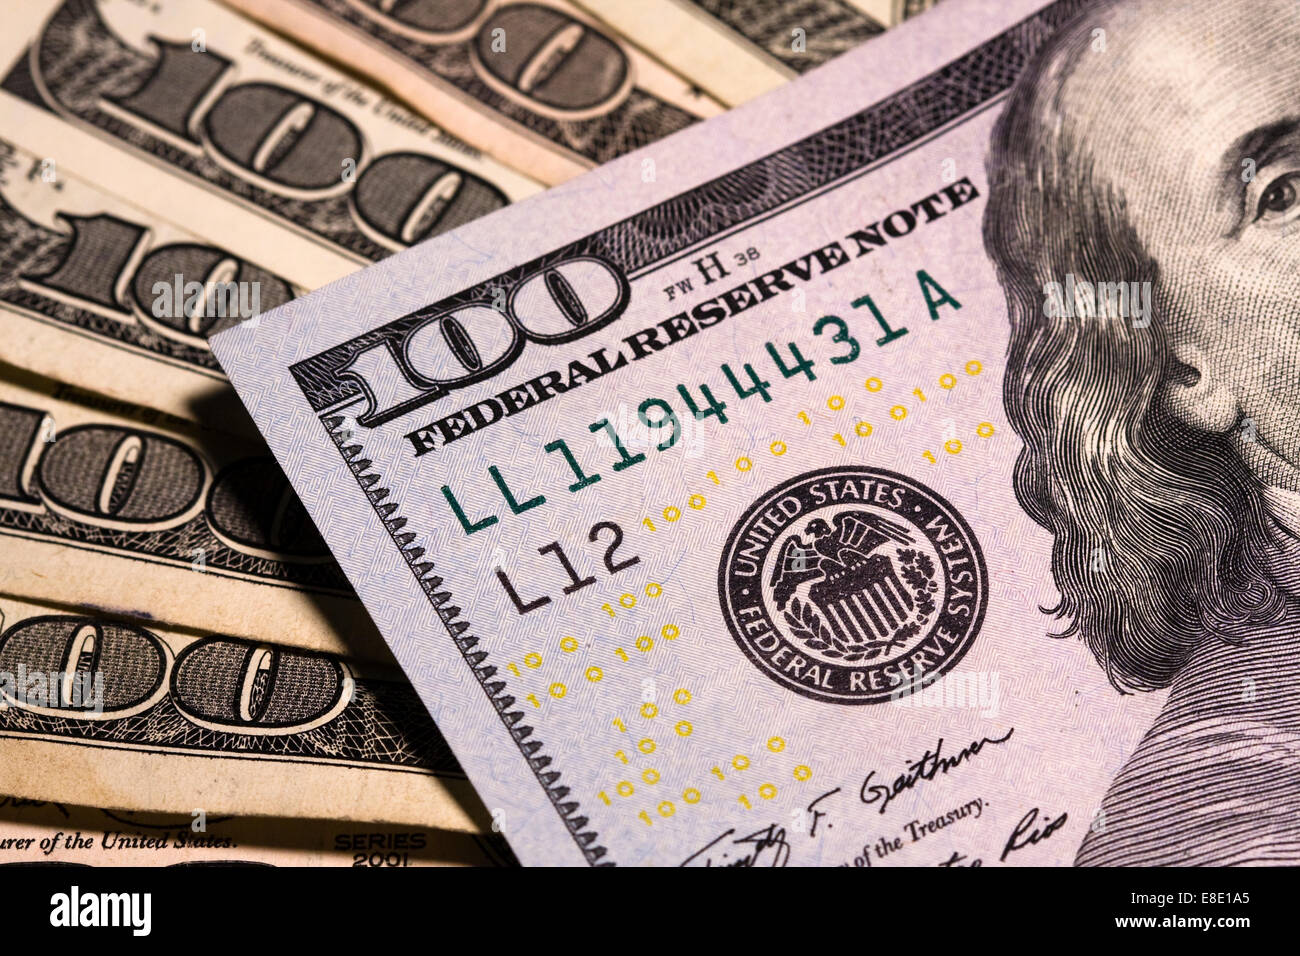 Plusieurs centaines de dollars distribués montrant la Réserve fédérale joint avec jaune, noir et bleu micro printing Banque D'Images